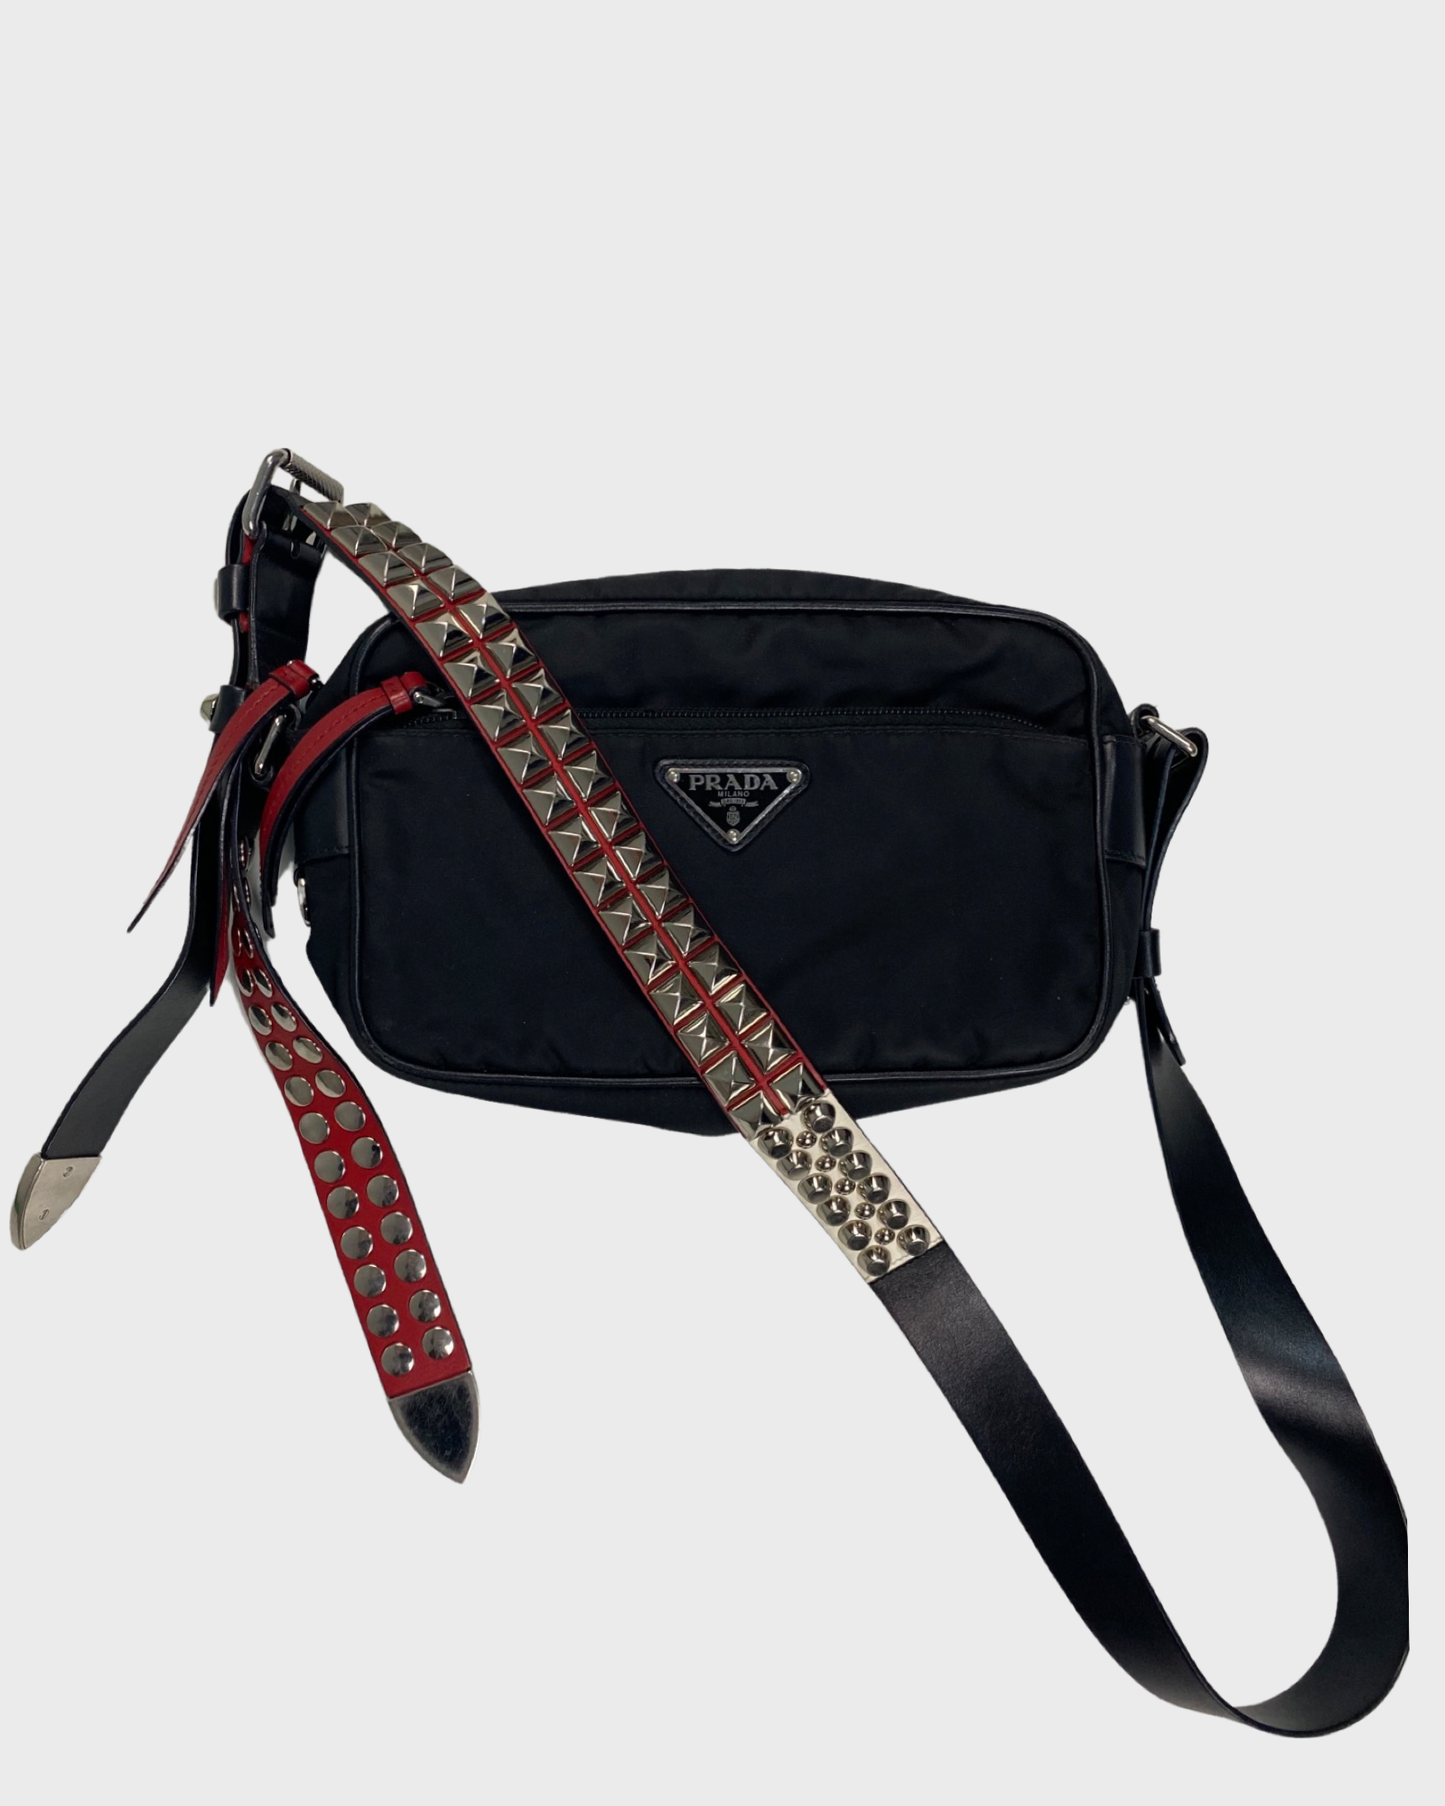 Prada Red/Black Nylon and Leather New Vela Studded Messenger Bag